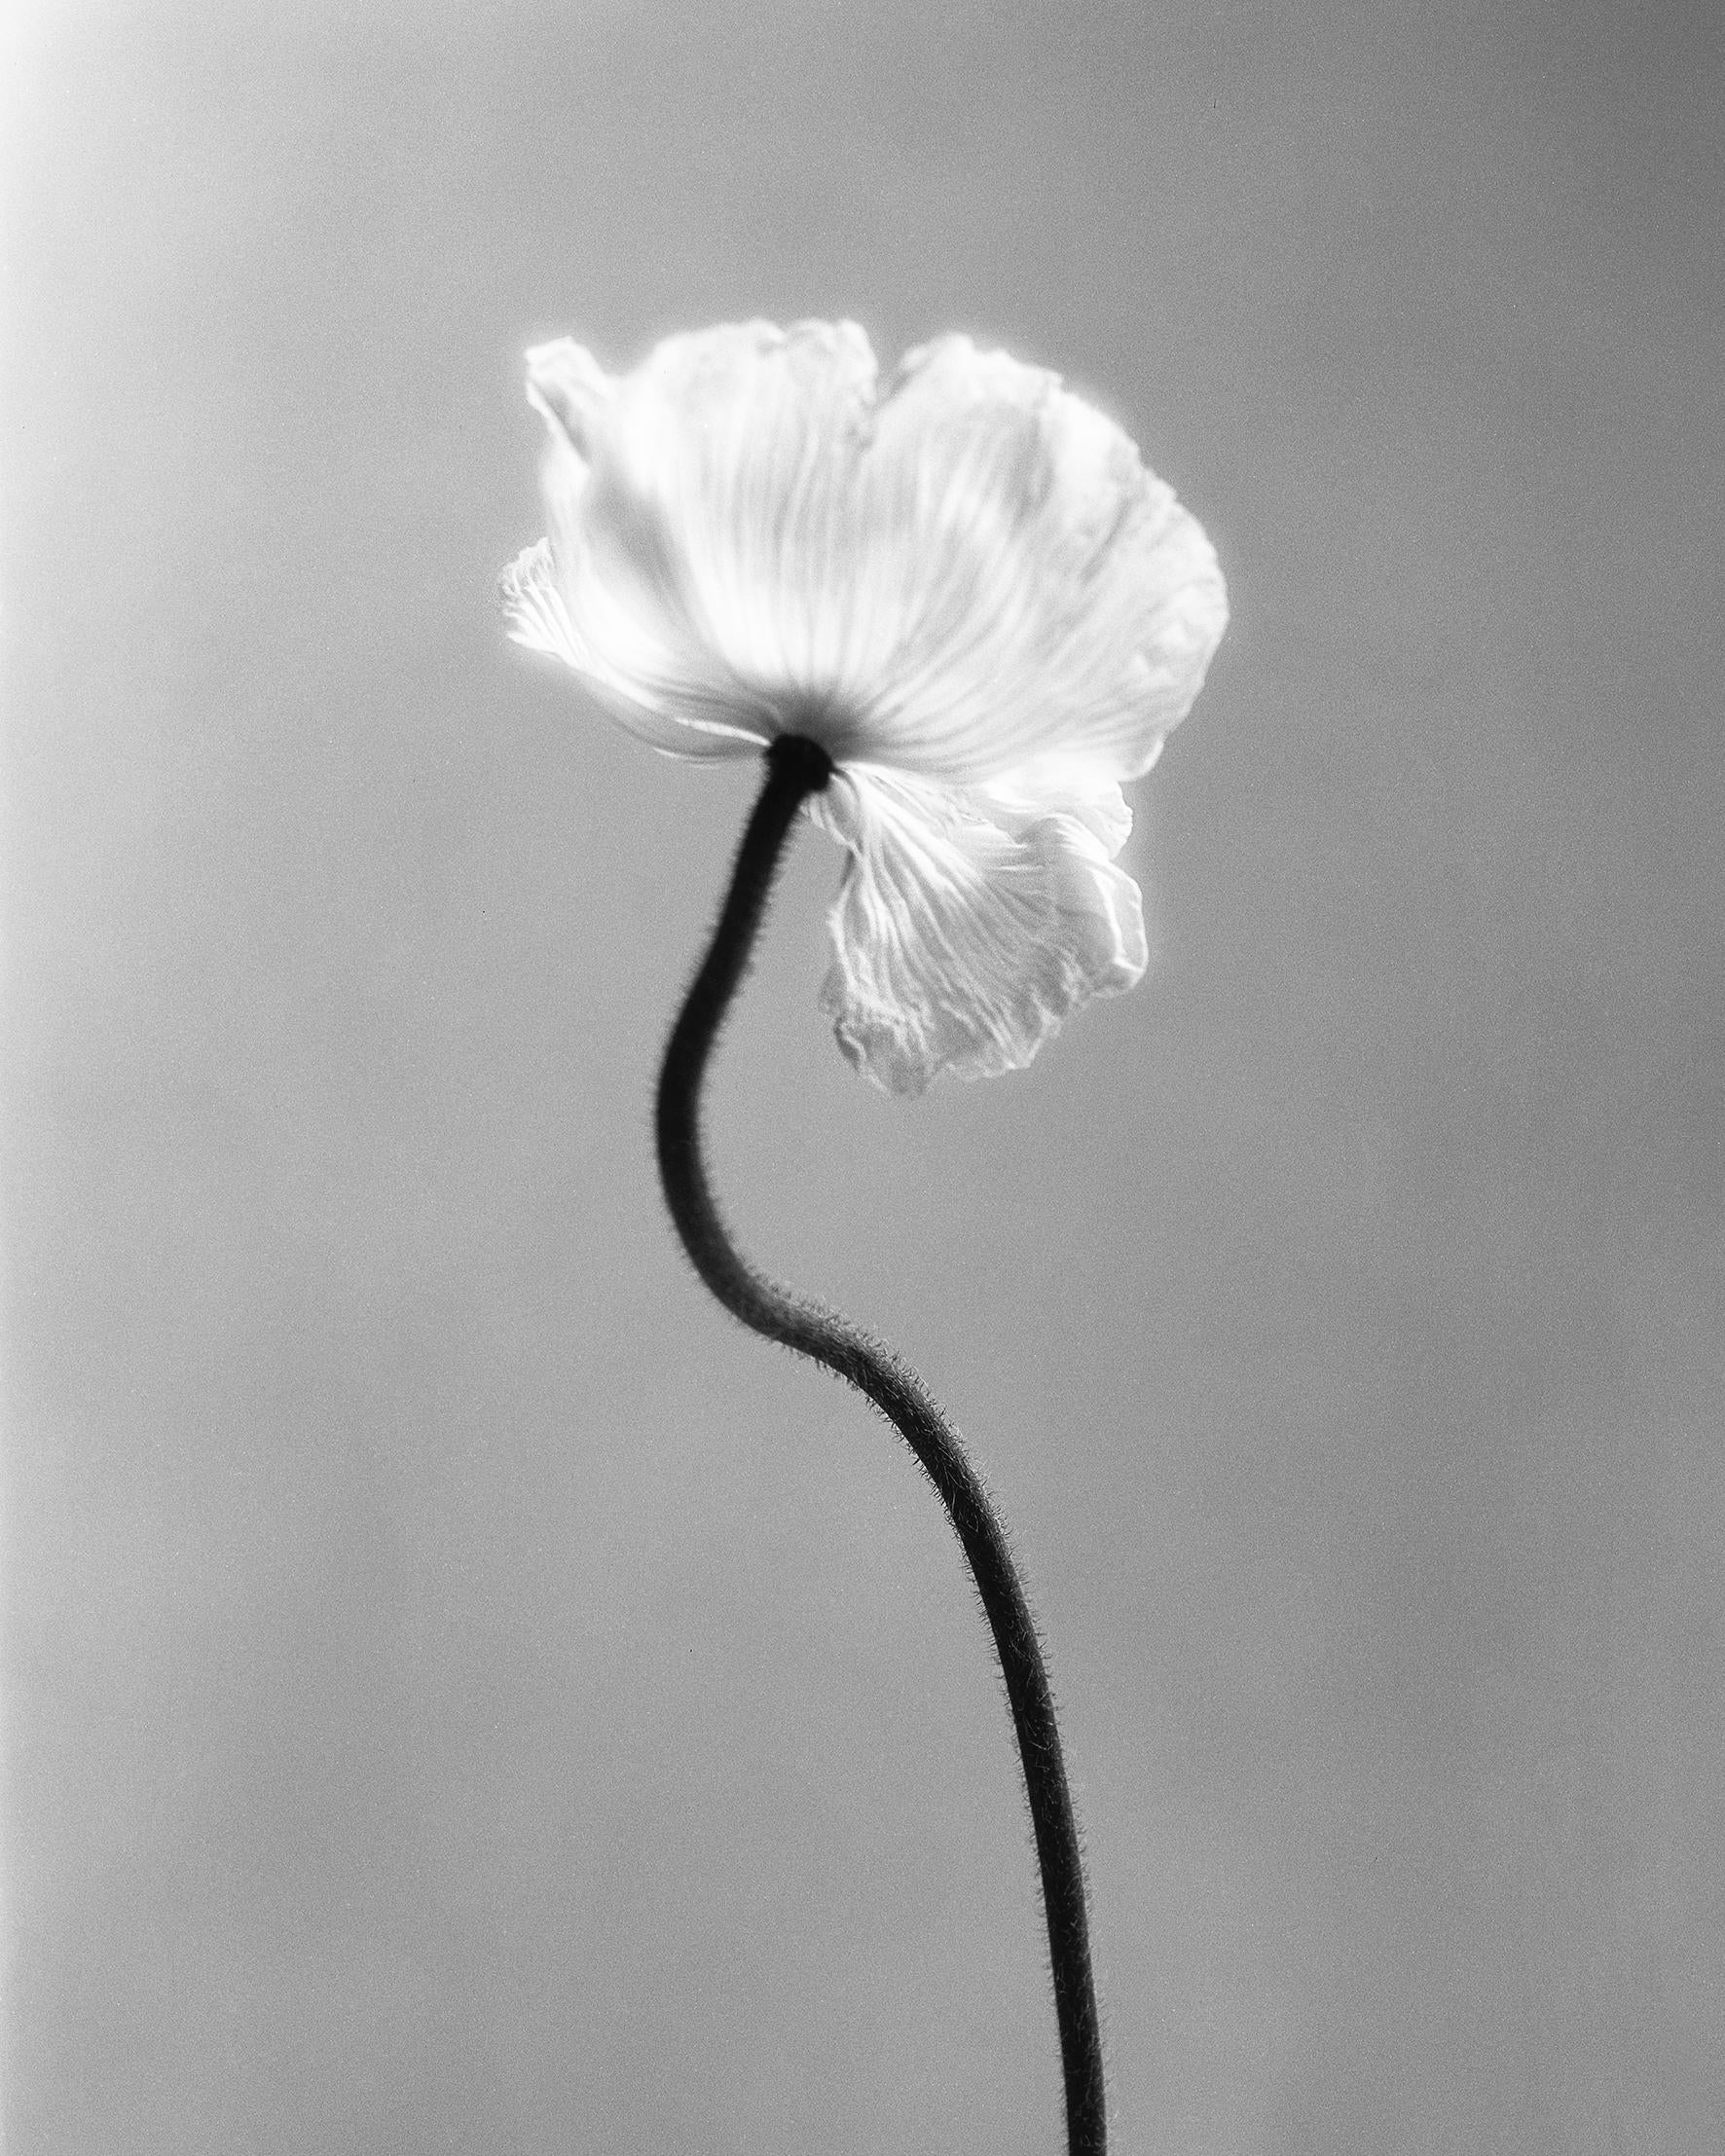 Mohnblumen Nr.3 – Analogue Schwarz-Weiß-Blumenfotografie, limitierte Auflage von 10 Stück